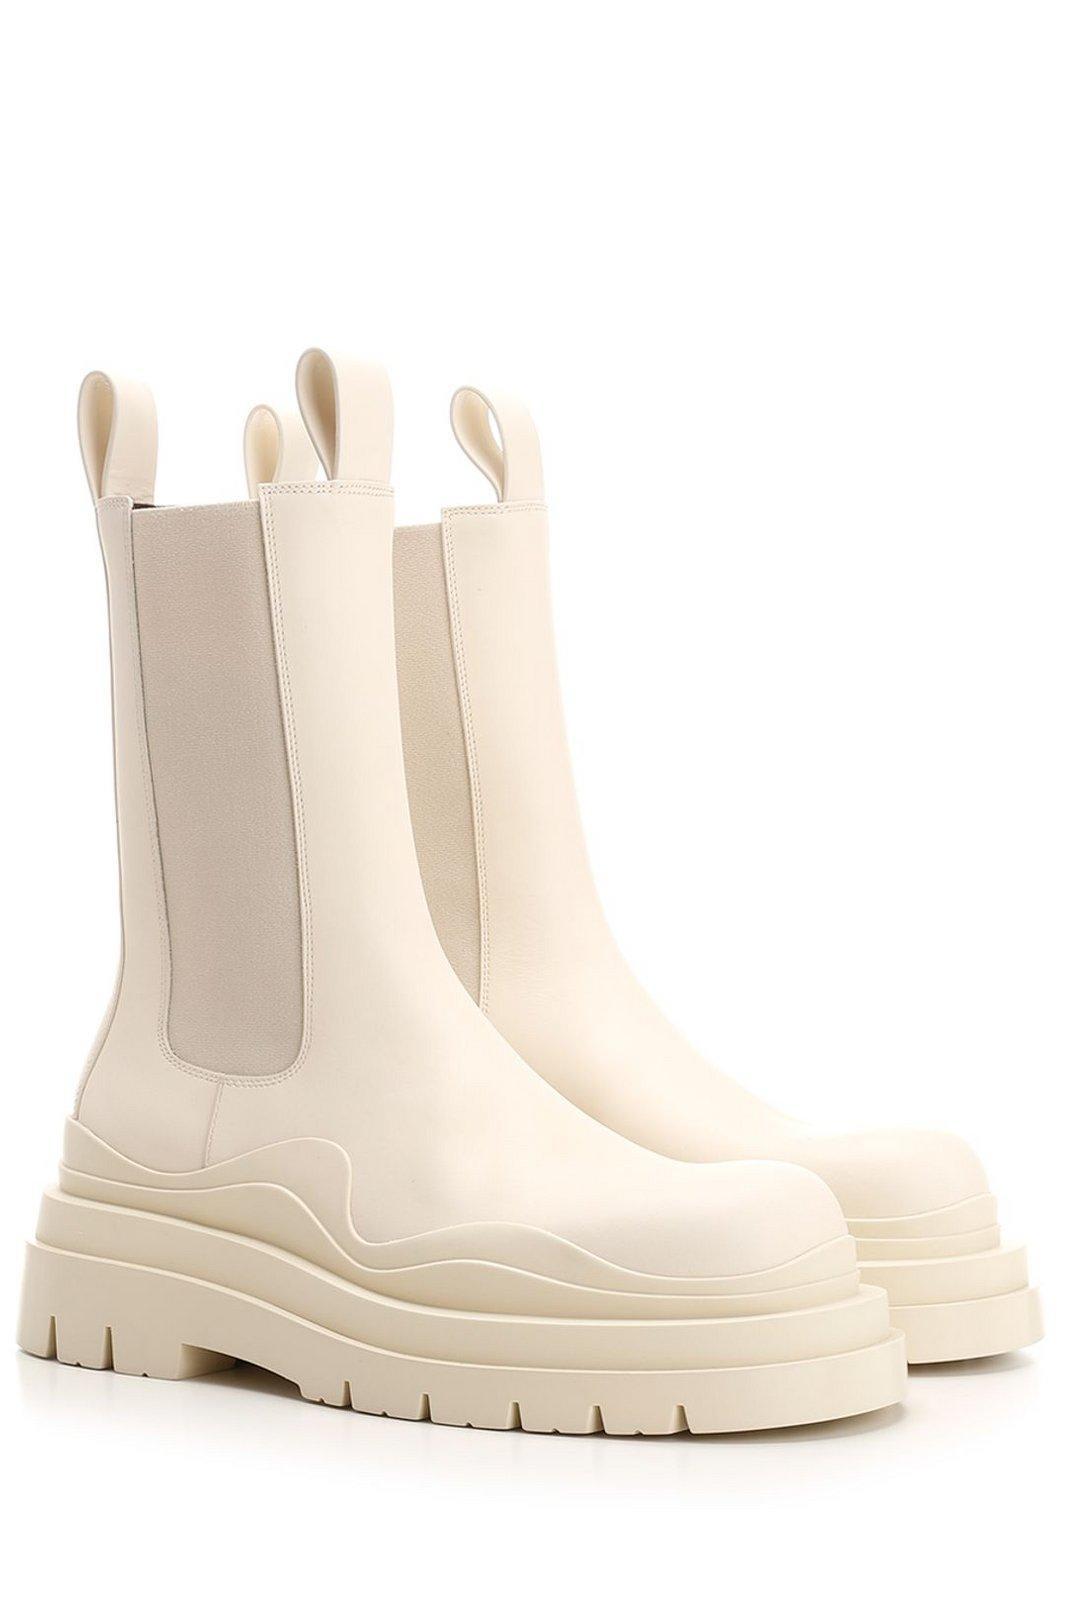 Bottega Veneta Bv Tire Boots in White for Men | Lyst